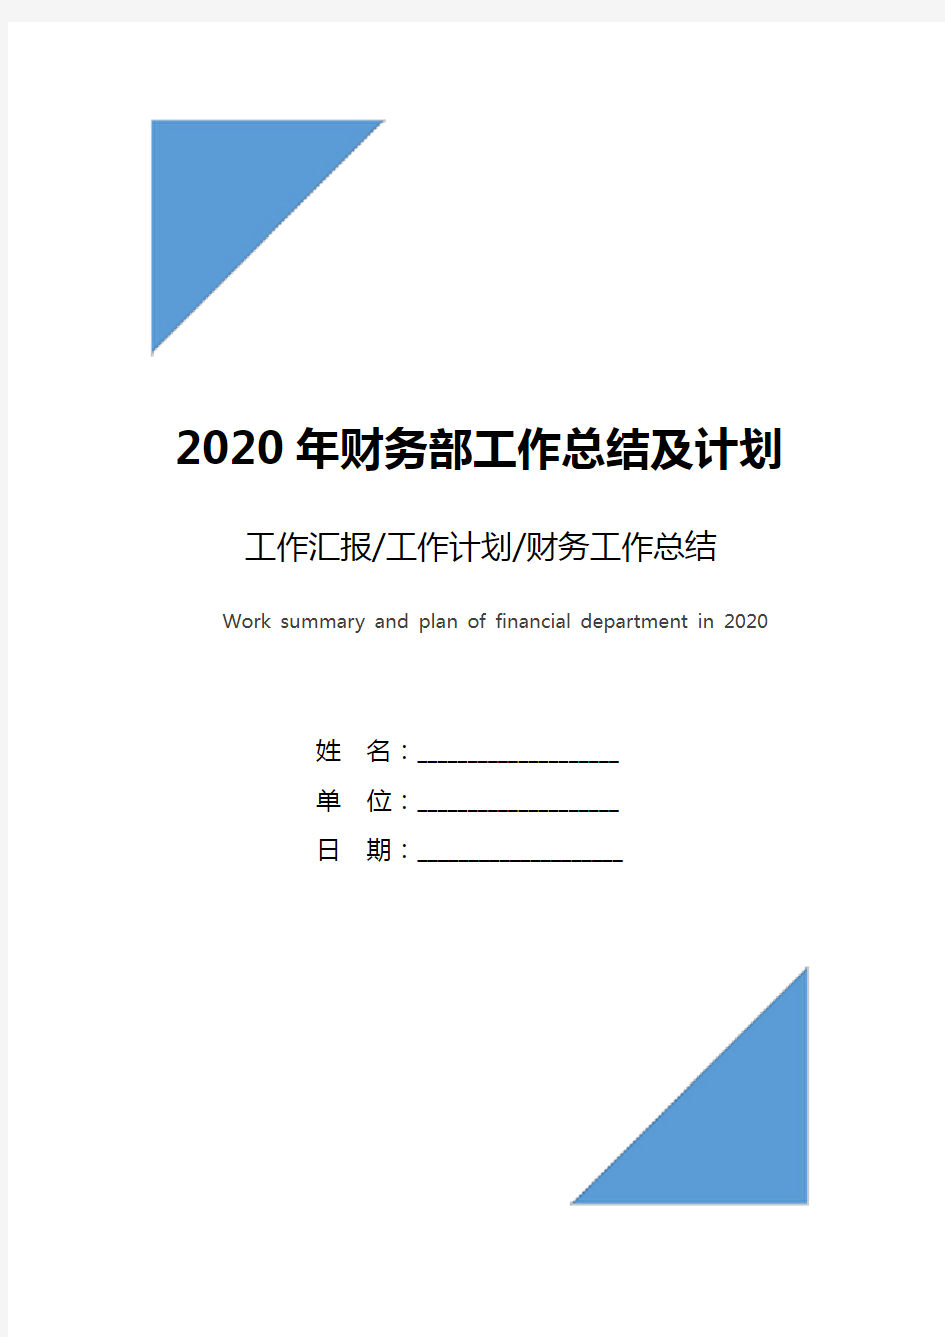 2020年财务部工作总结及计划